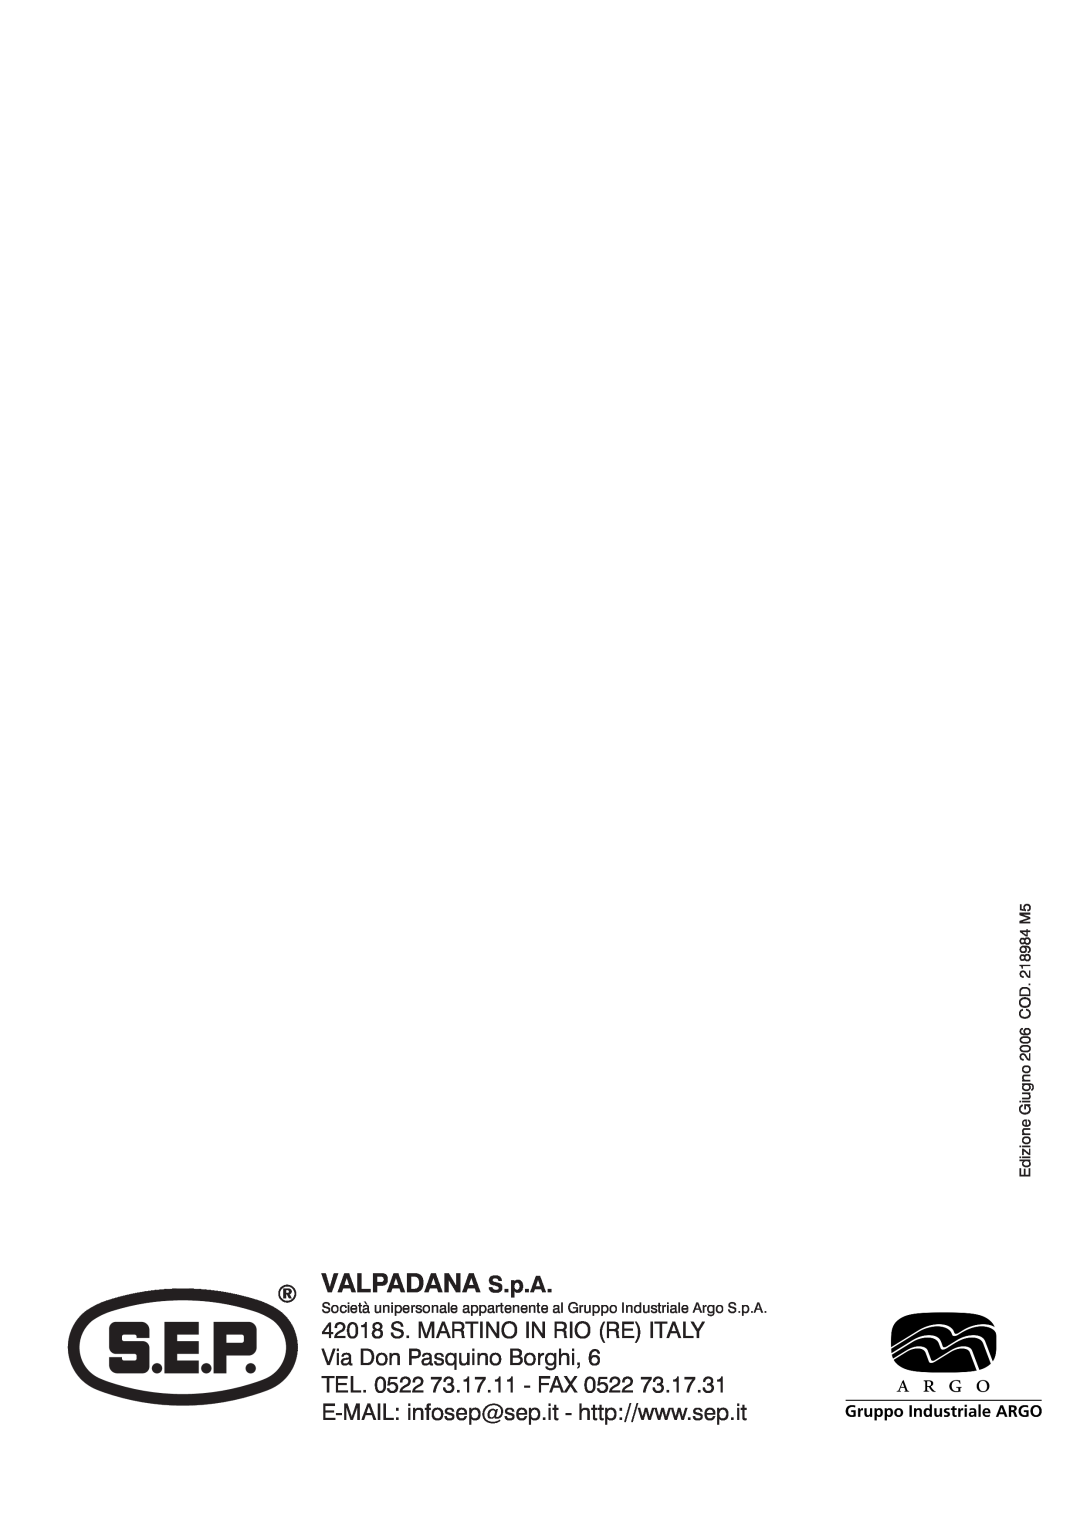 S.E.P BC90(1+1) manual VALPADANA S.p.A, 42018 S. MARTINO IN RIO RE ITALY Via Don Pasquino Borghi 